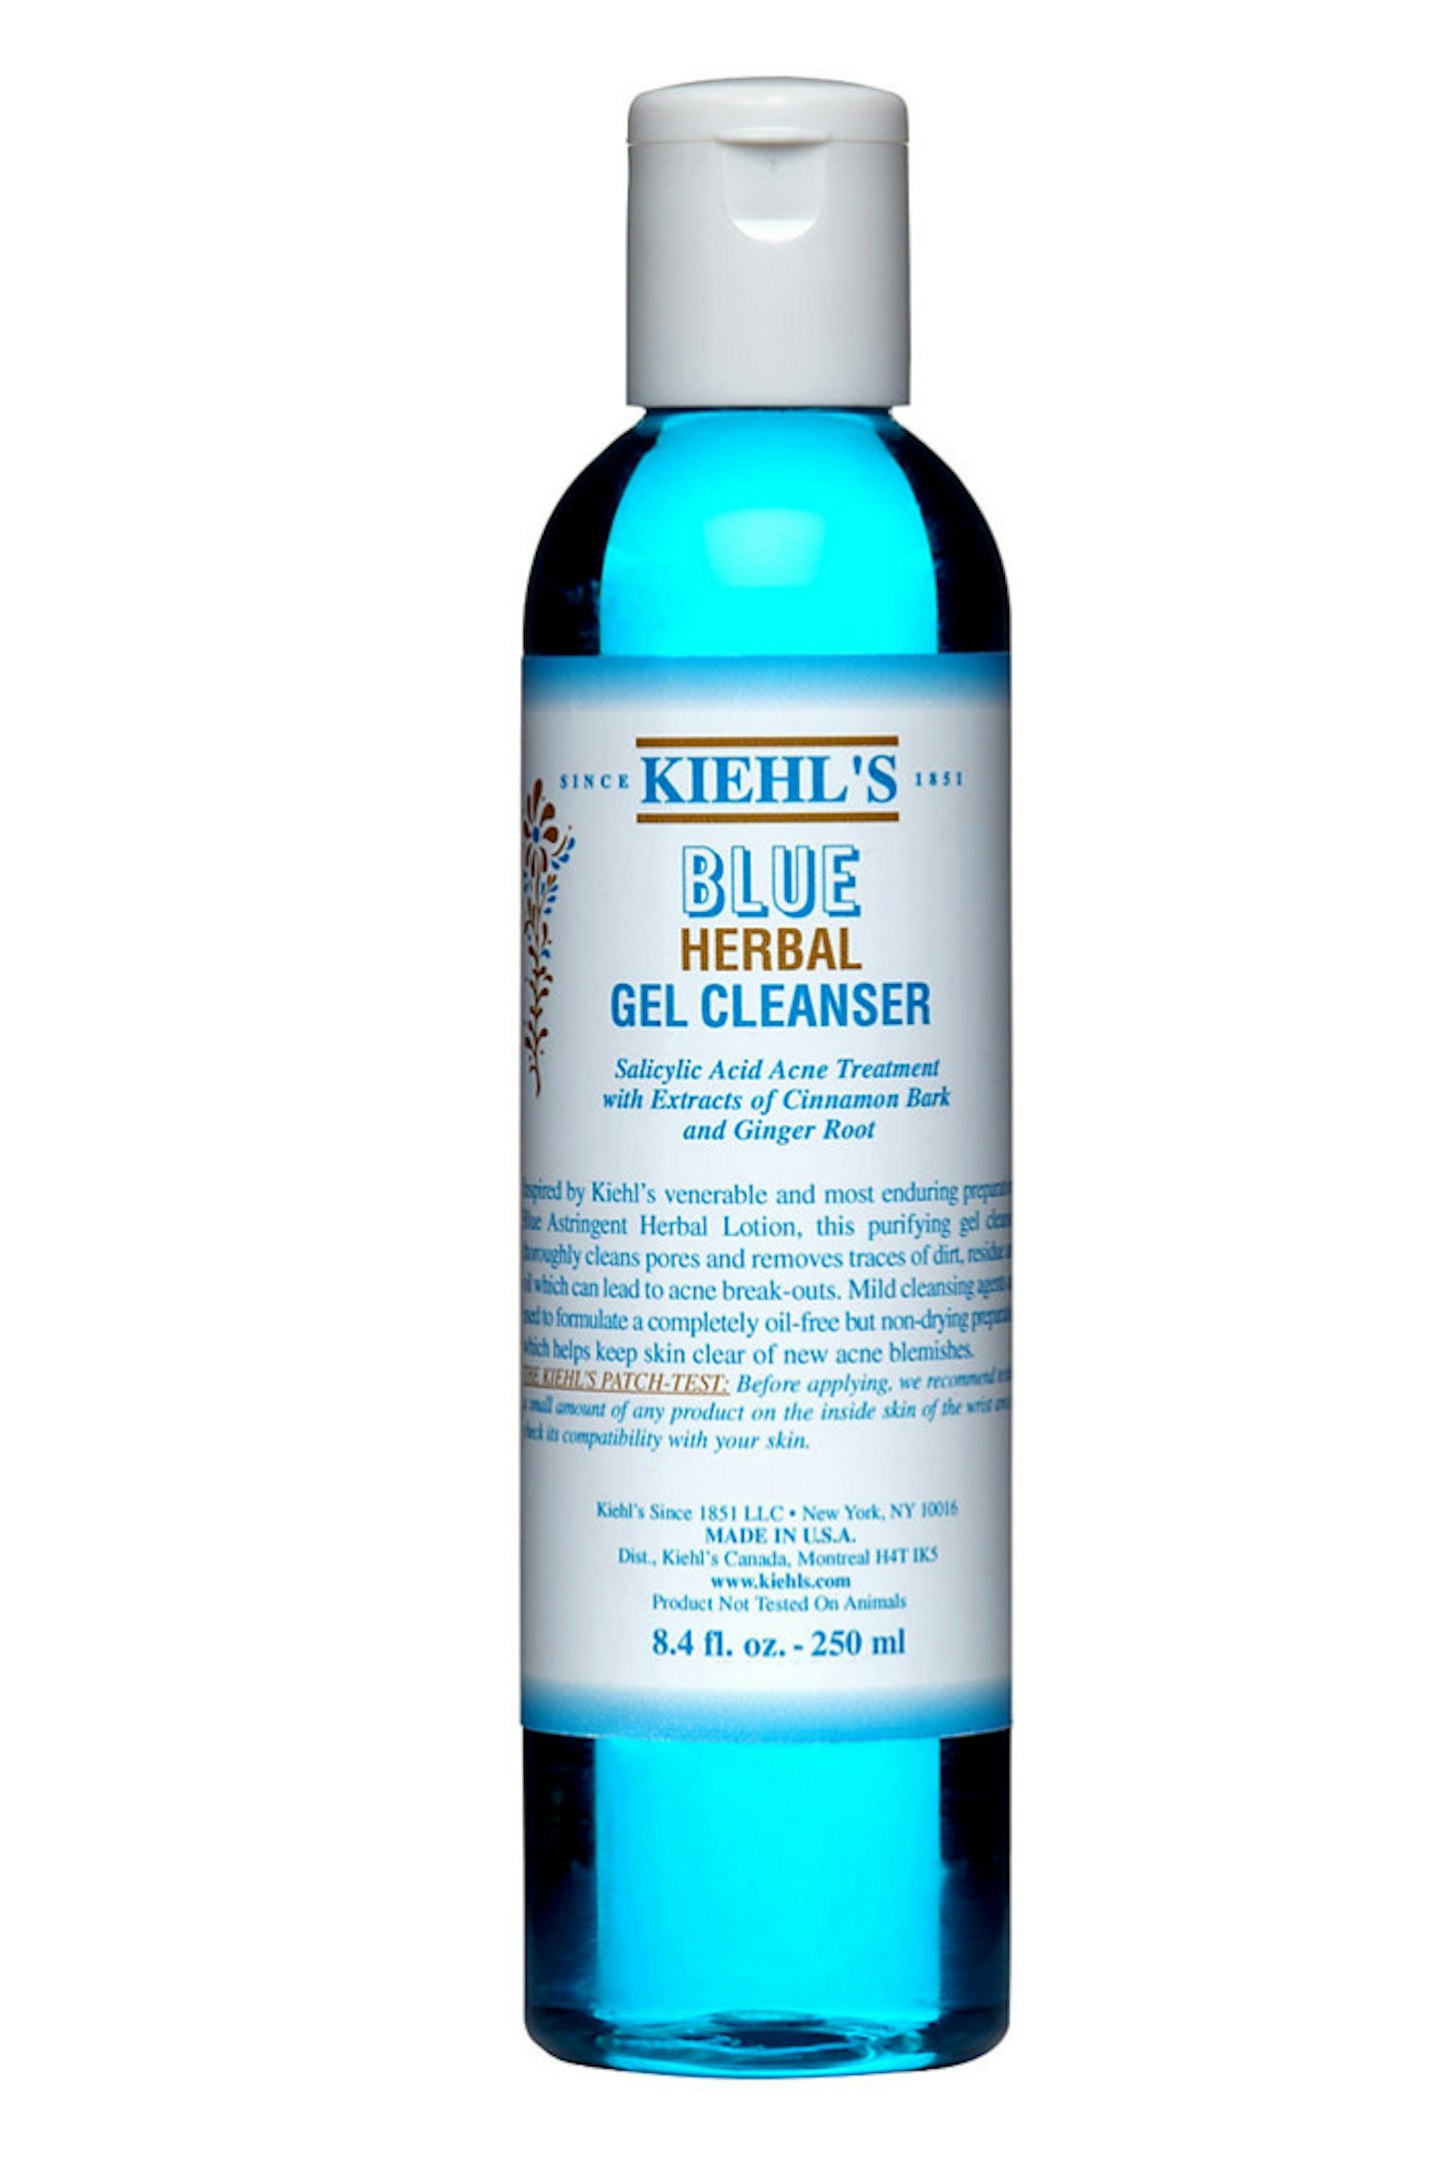 Kiehl's Blue Herbal Gel Cleanser, £17.00